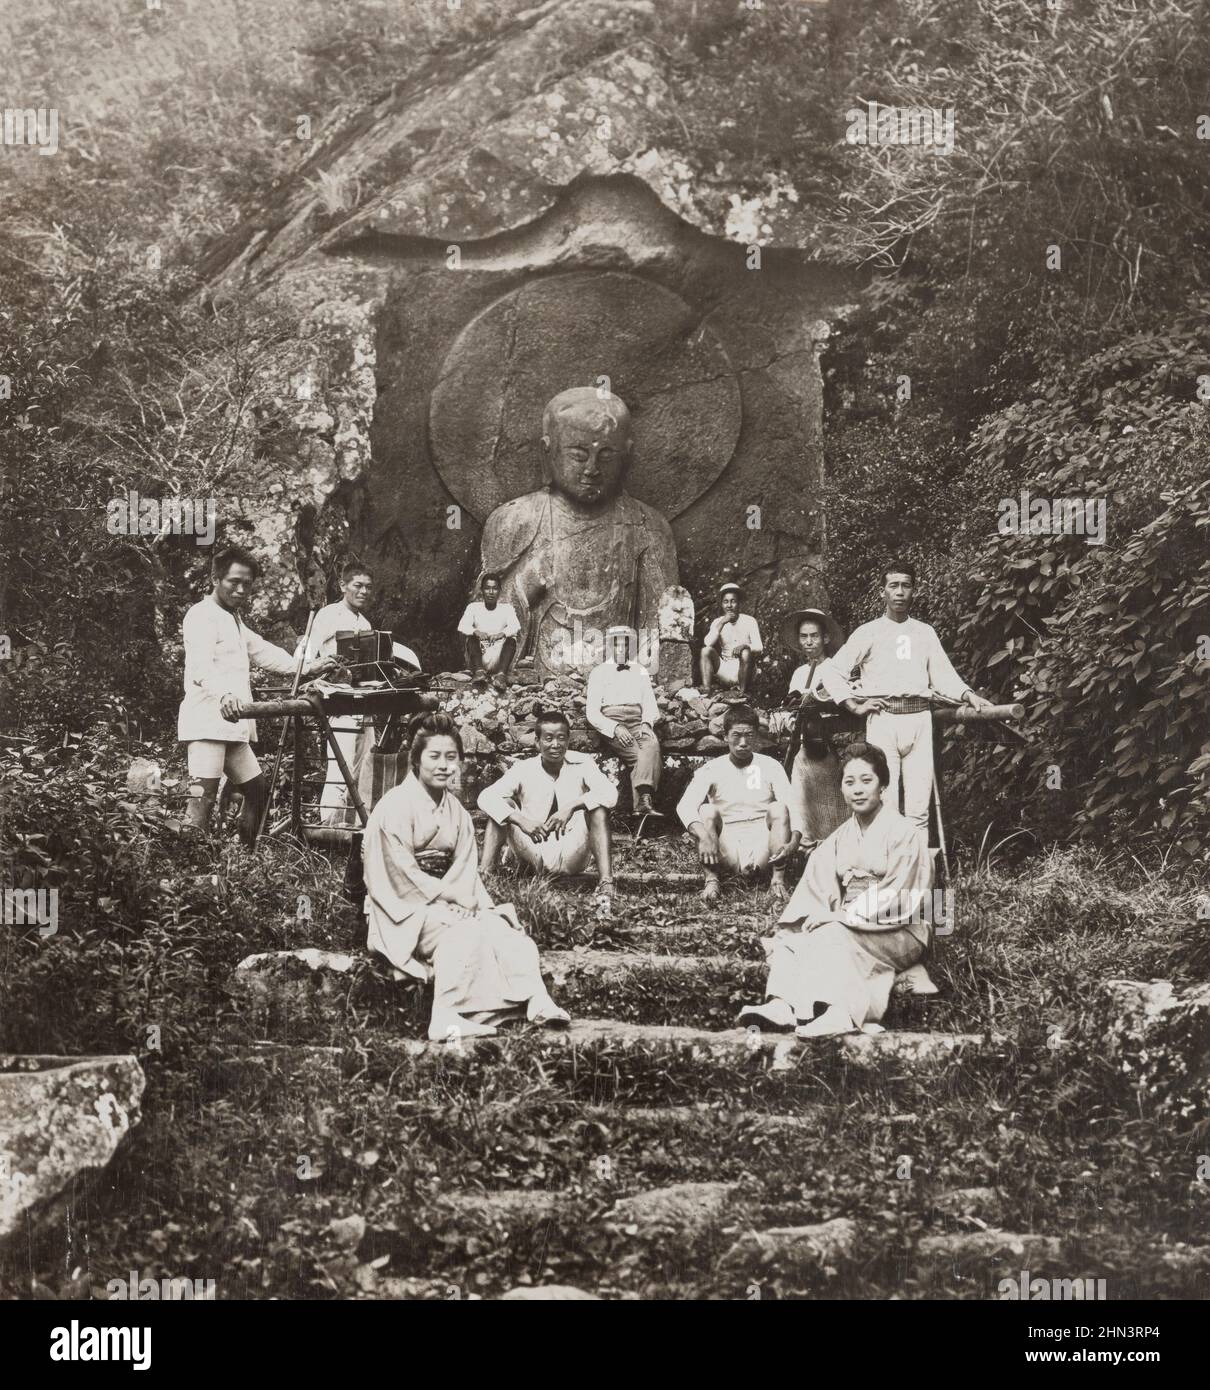 Le relief colossal sculpté de Jizo Bosatsu, le Saint bouddhiste et le Saint patron des voyageurs au Japon. Ashinoyu, Japon. 1901 Banque D'Images